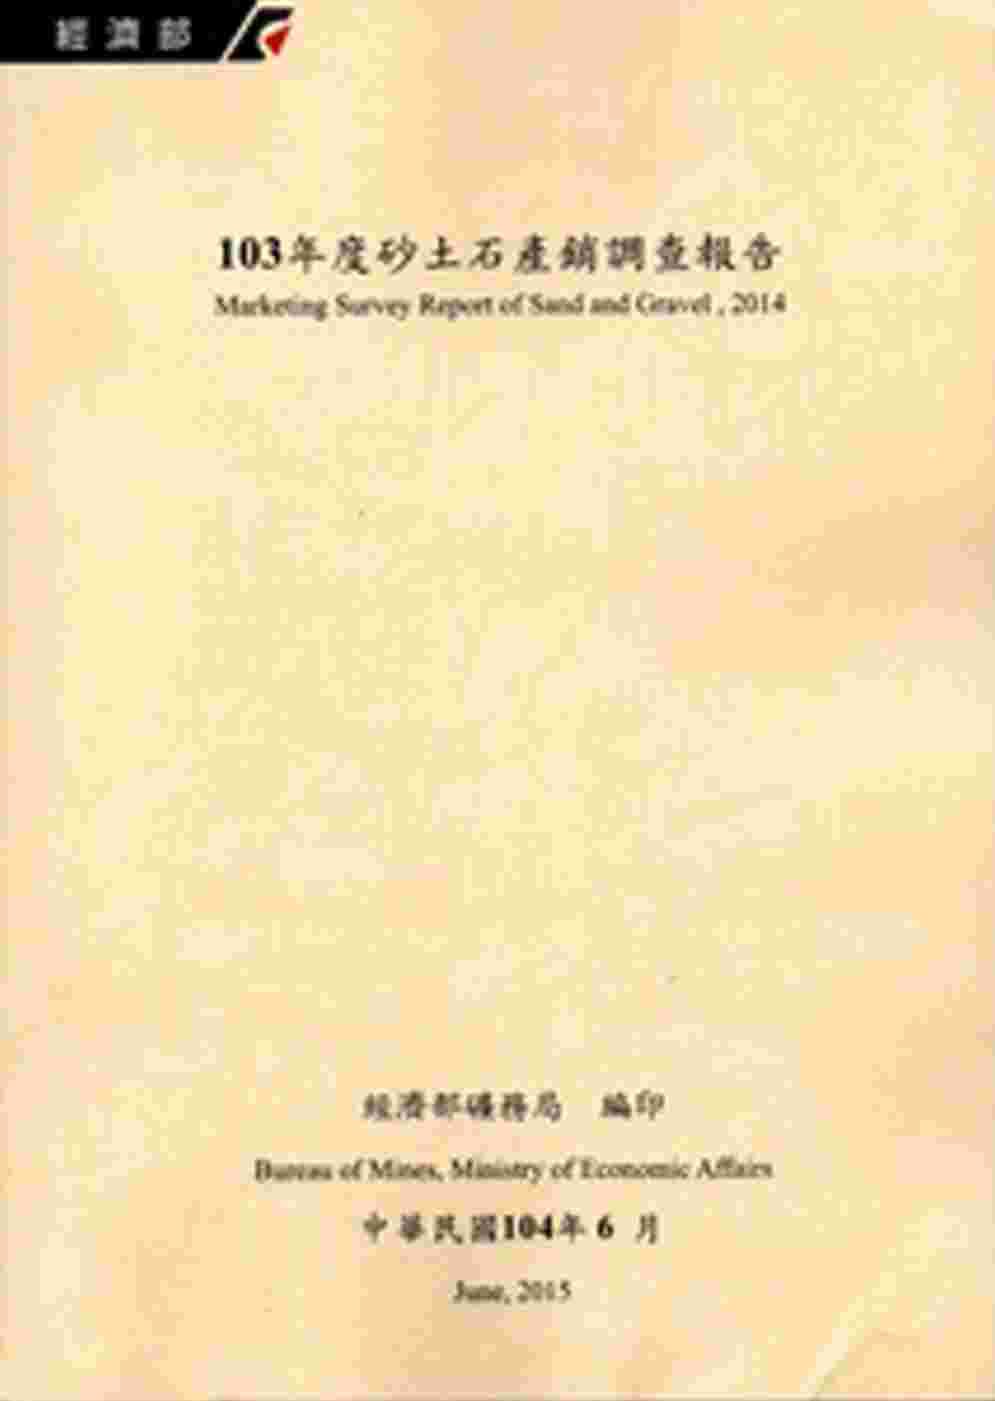 砂土石產銷調查報告•103年度